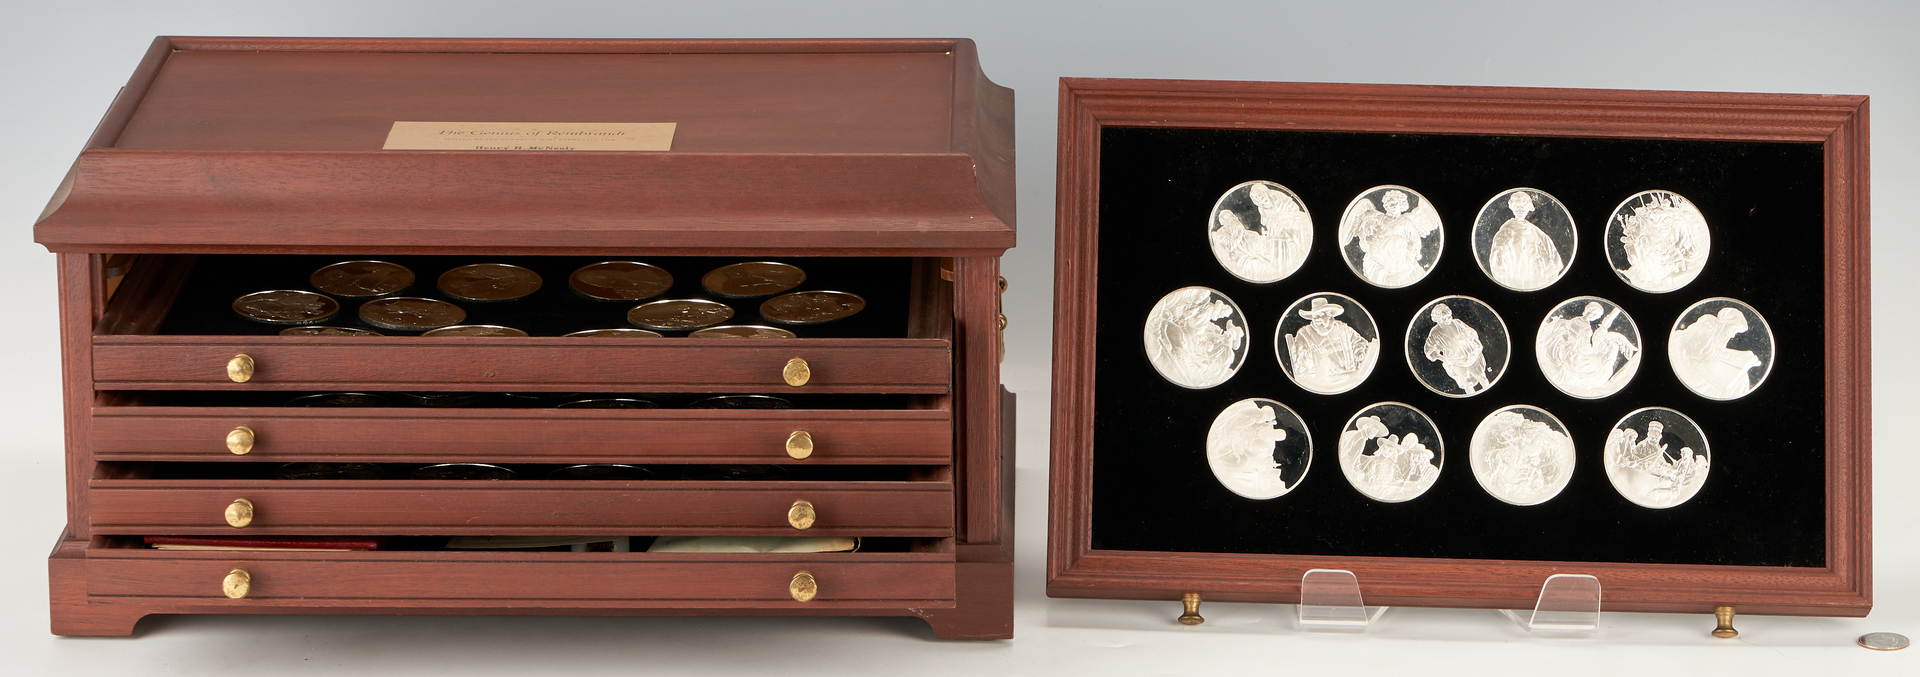 Lot 724: Franklin Mint Rembrandt's Genius Sterling Silver Proof Medal Set